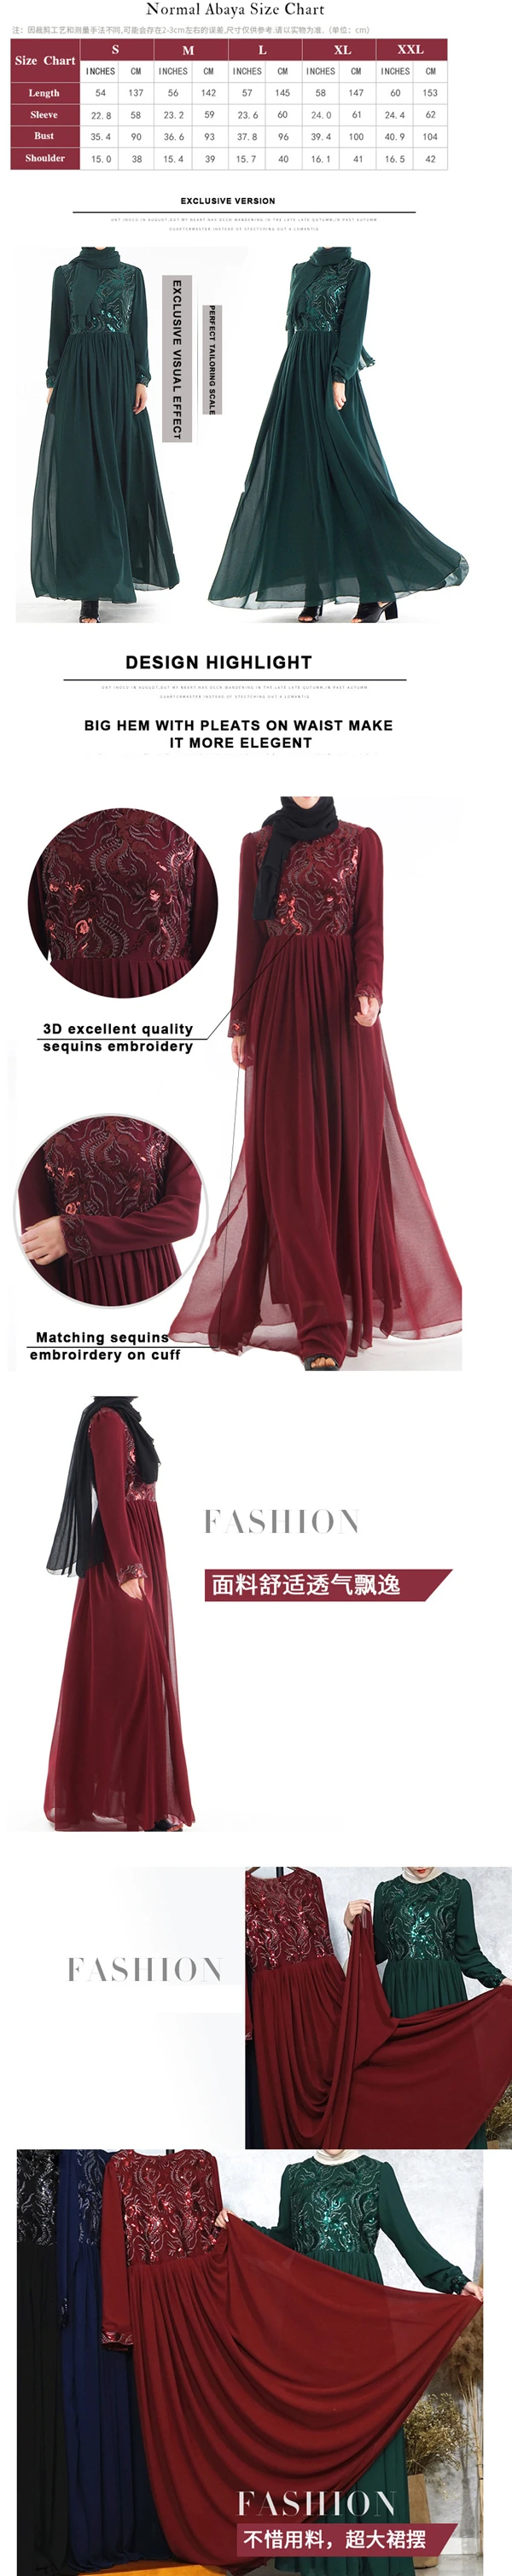 Новый арабский сабик Дубай Abay женский кафтан абайя Ближний Восток мусульманский кафтан платье женщина путешествия длинное платье